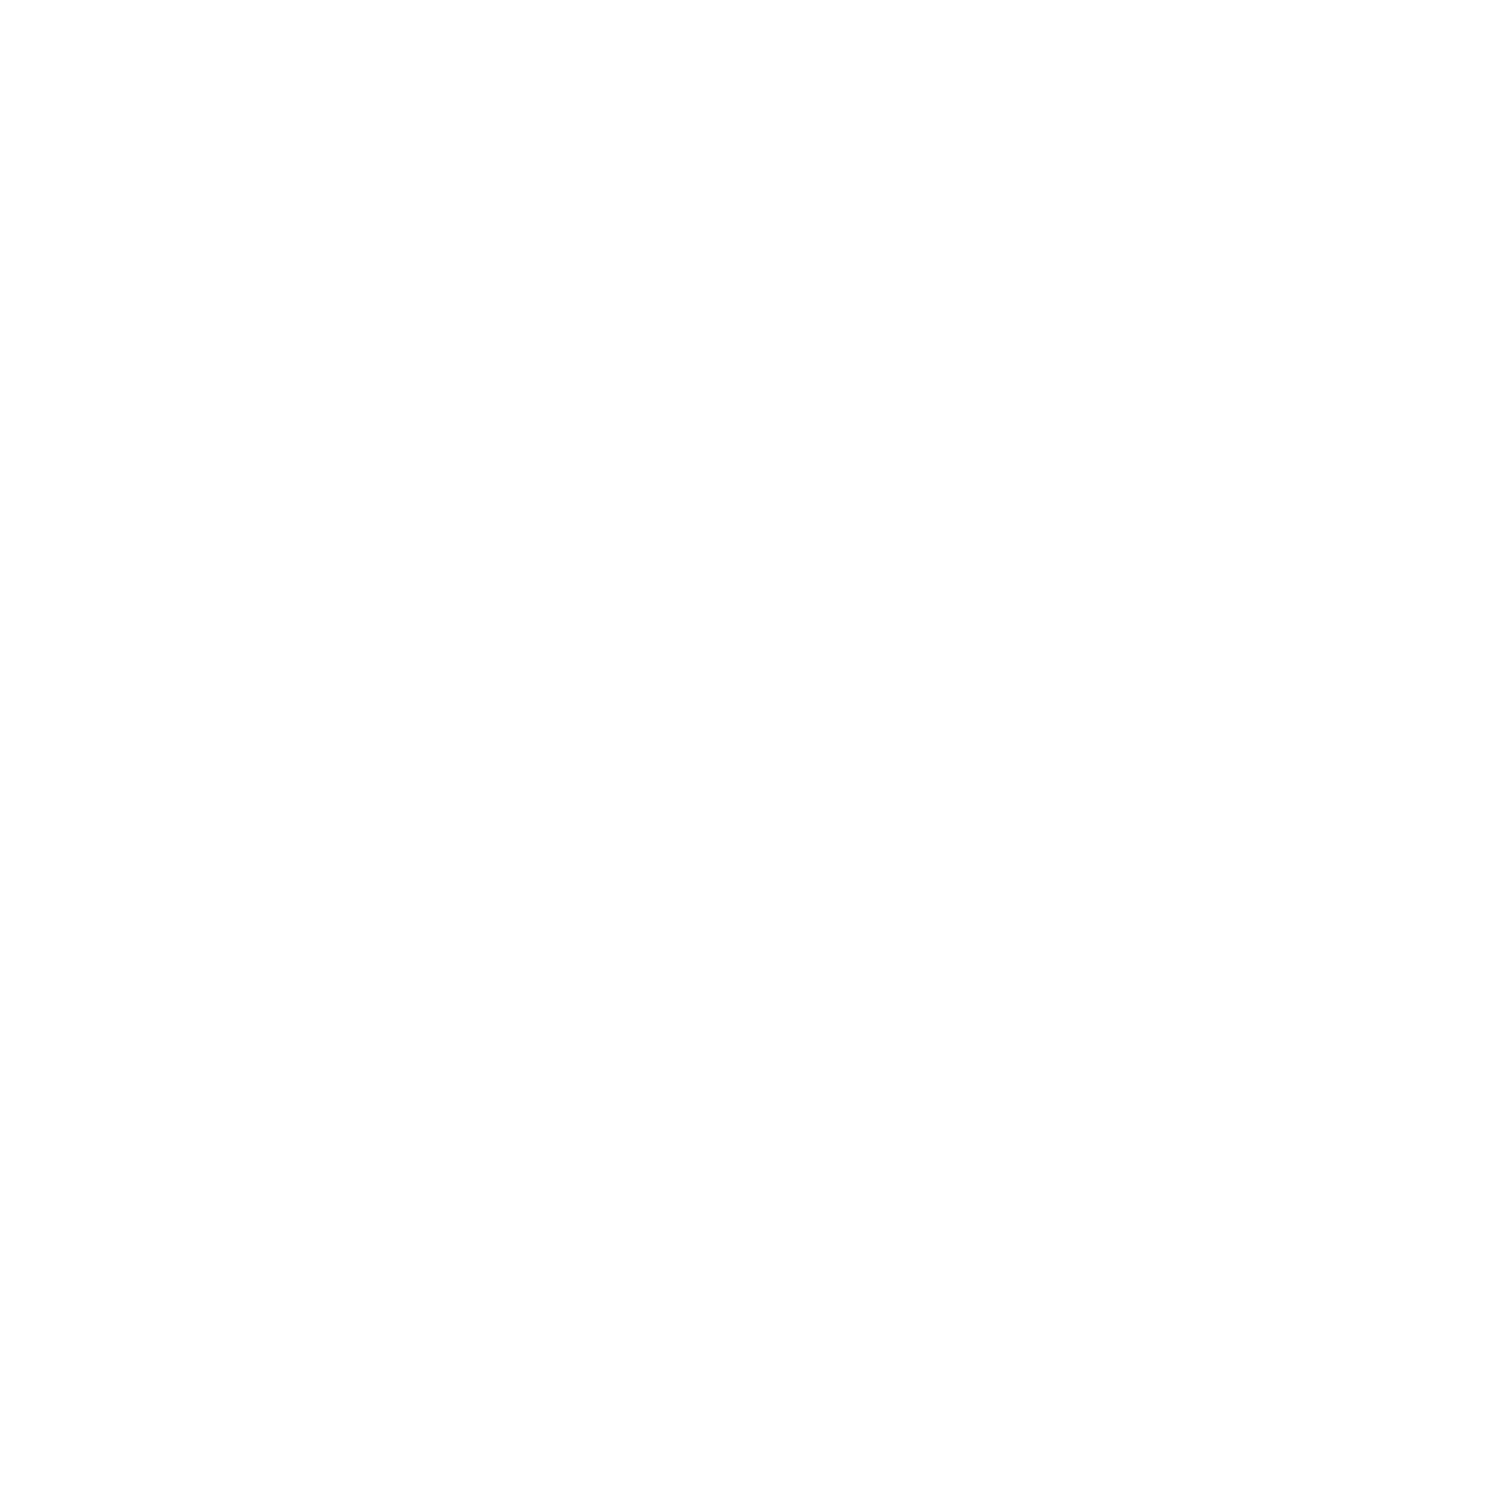 Matt Fuson Music